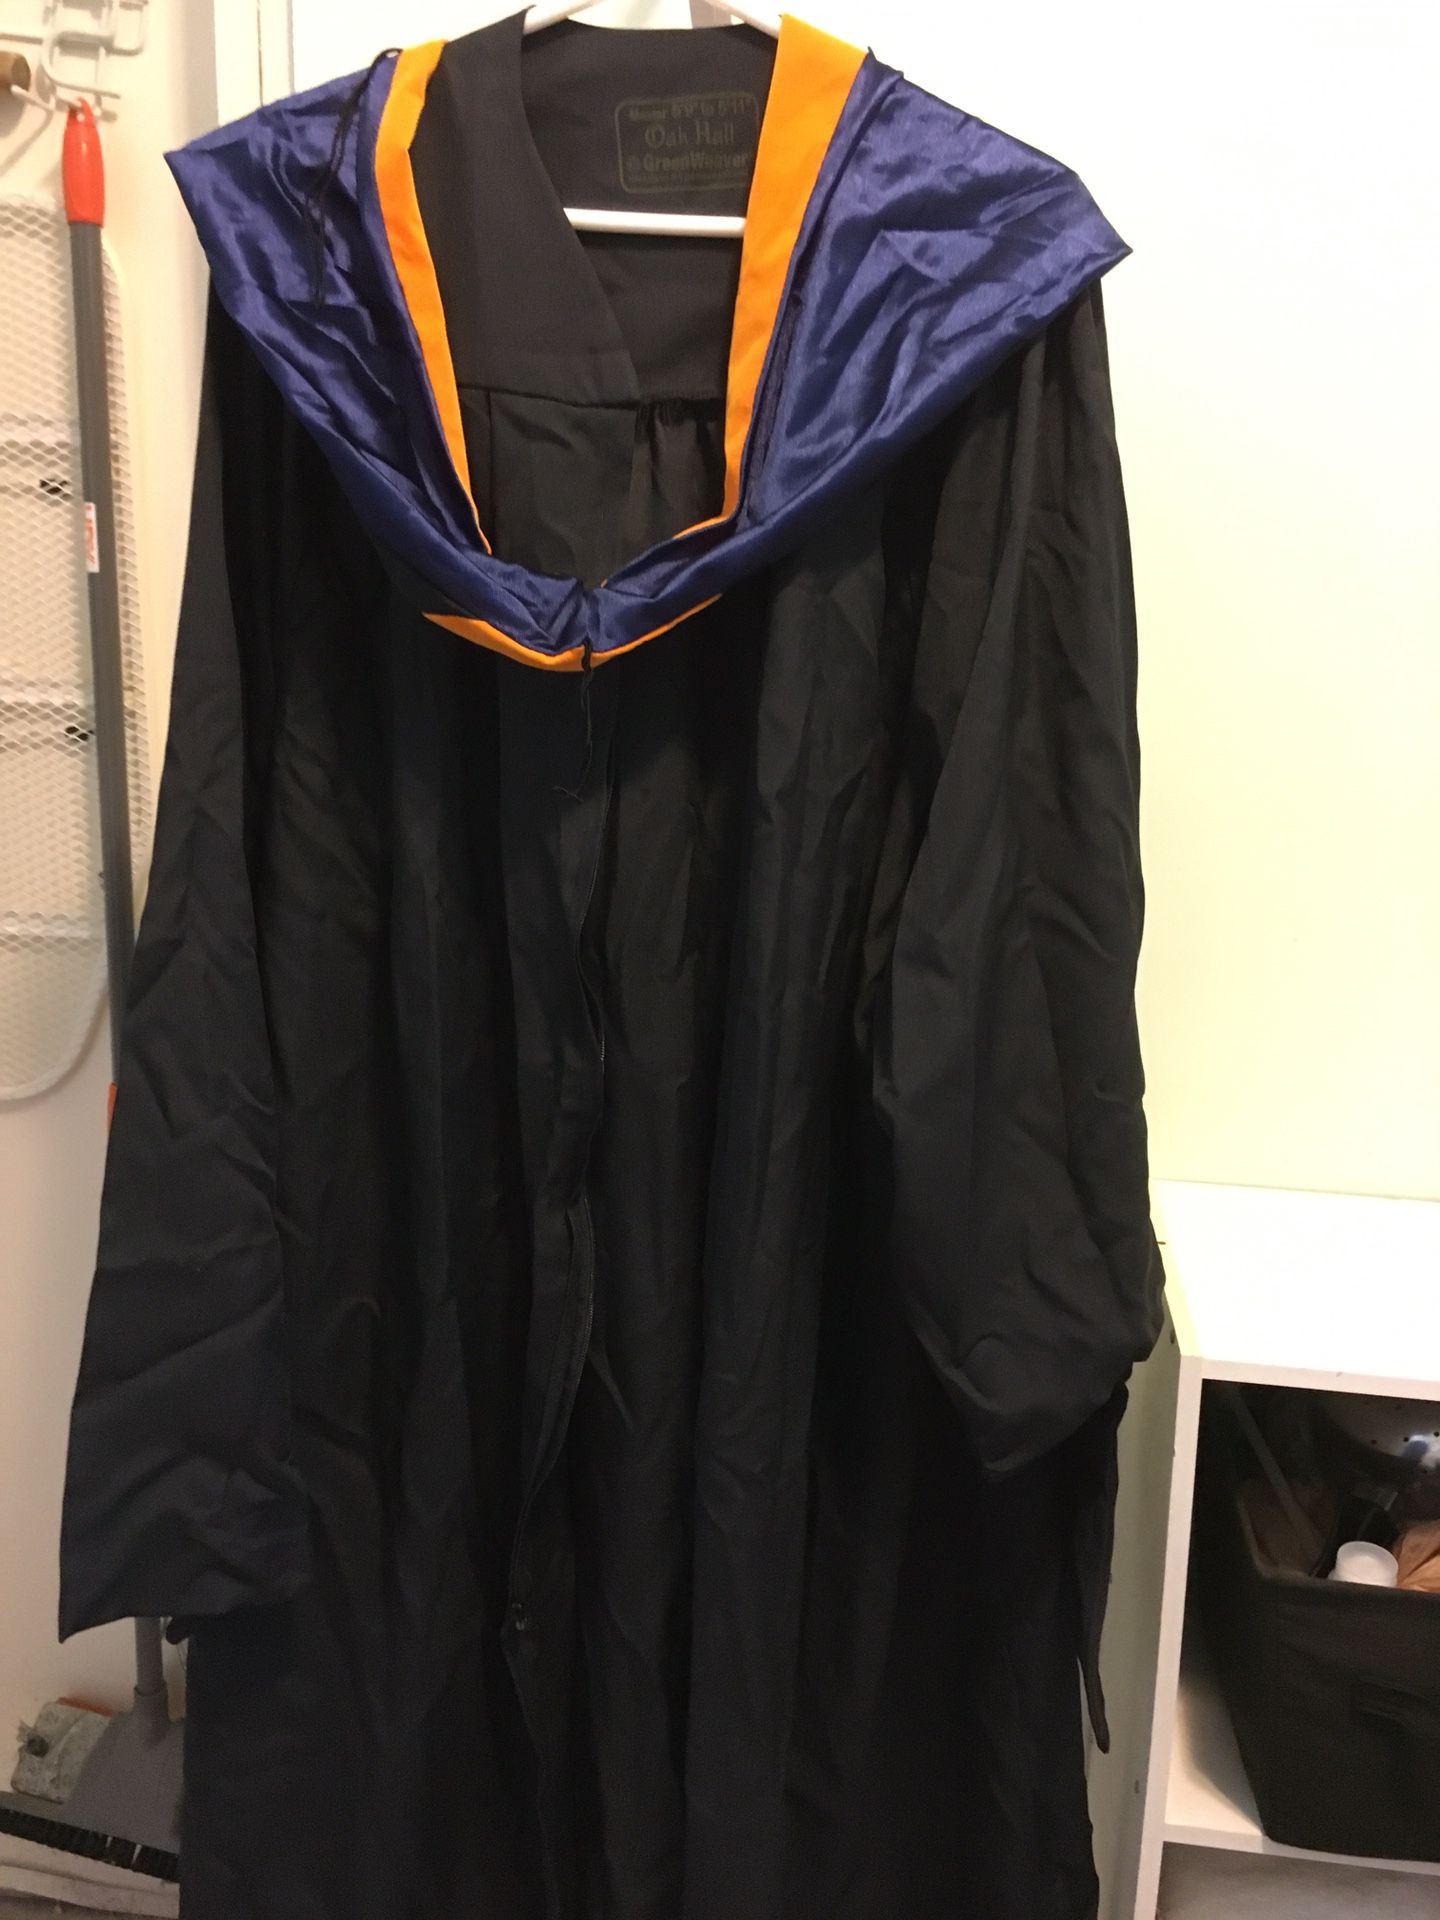 Graduation FIU Oak Hall Cap And Gown